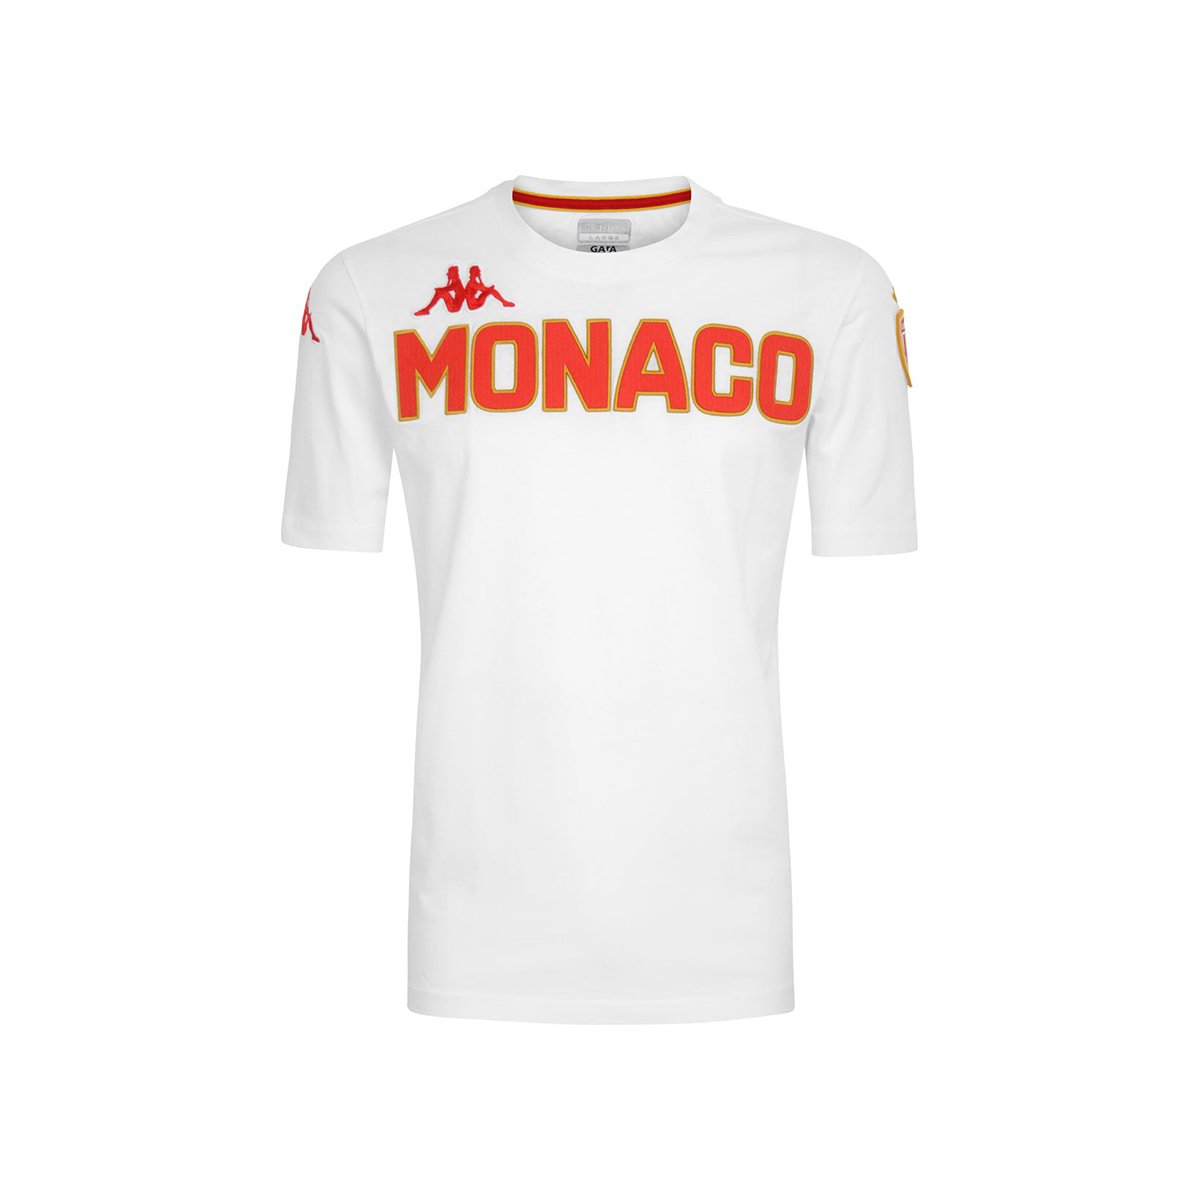 Camiseta Eroi Tee As Monaco Blanco Niños - Imagen 1